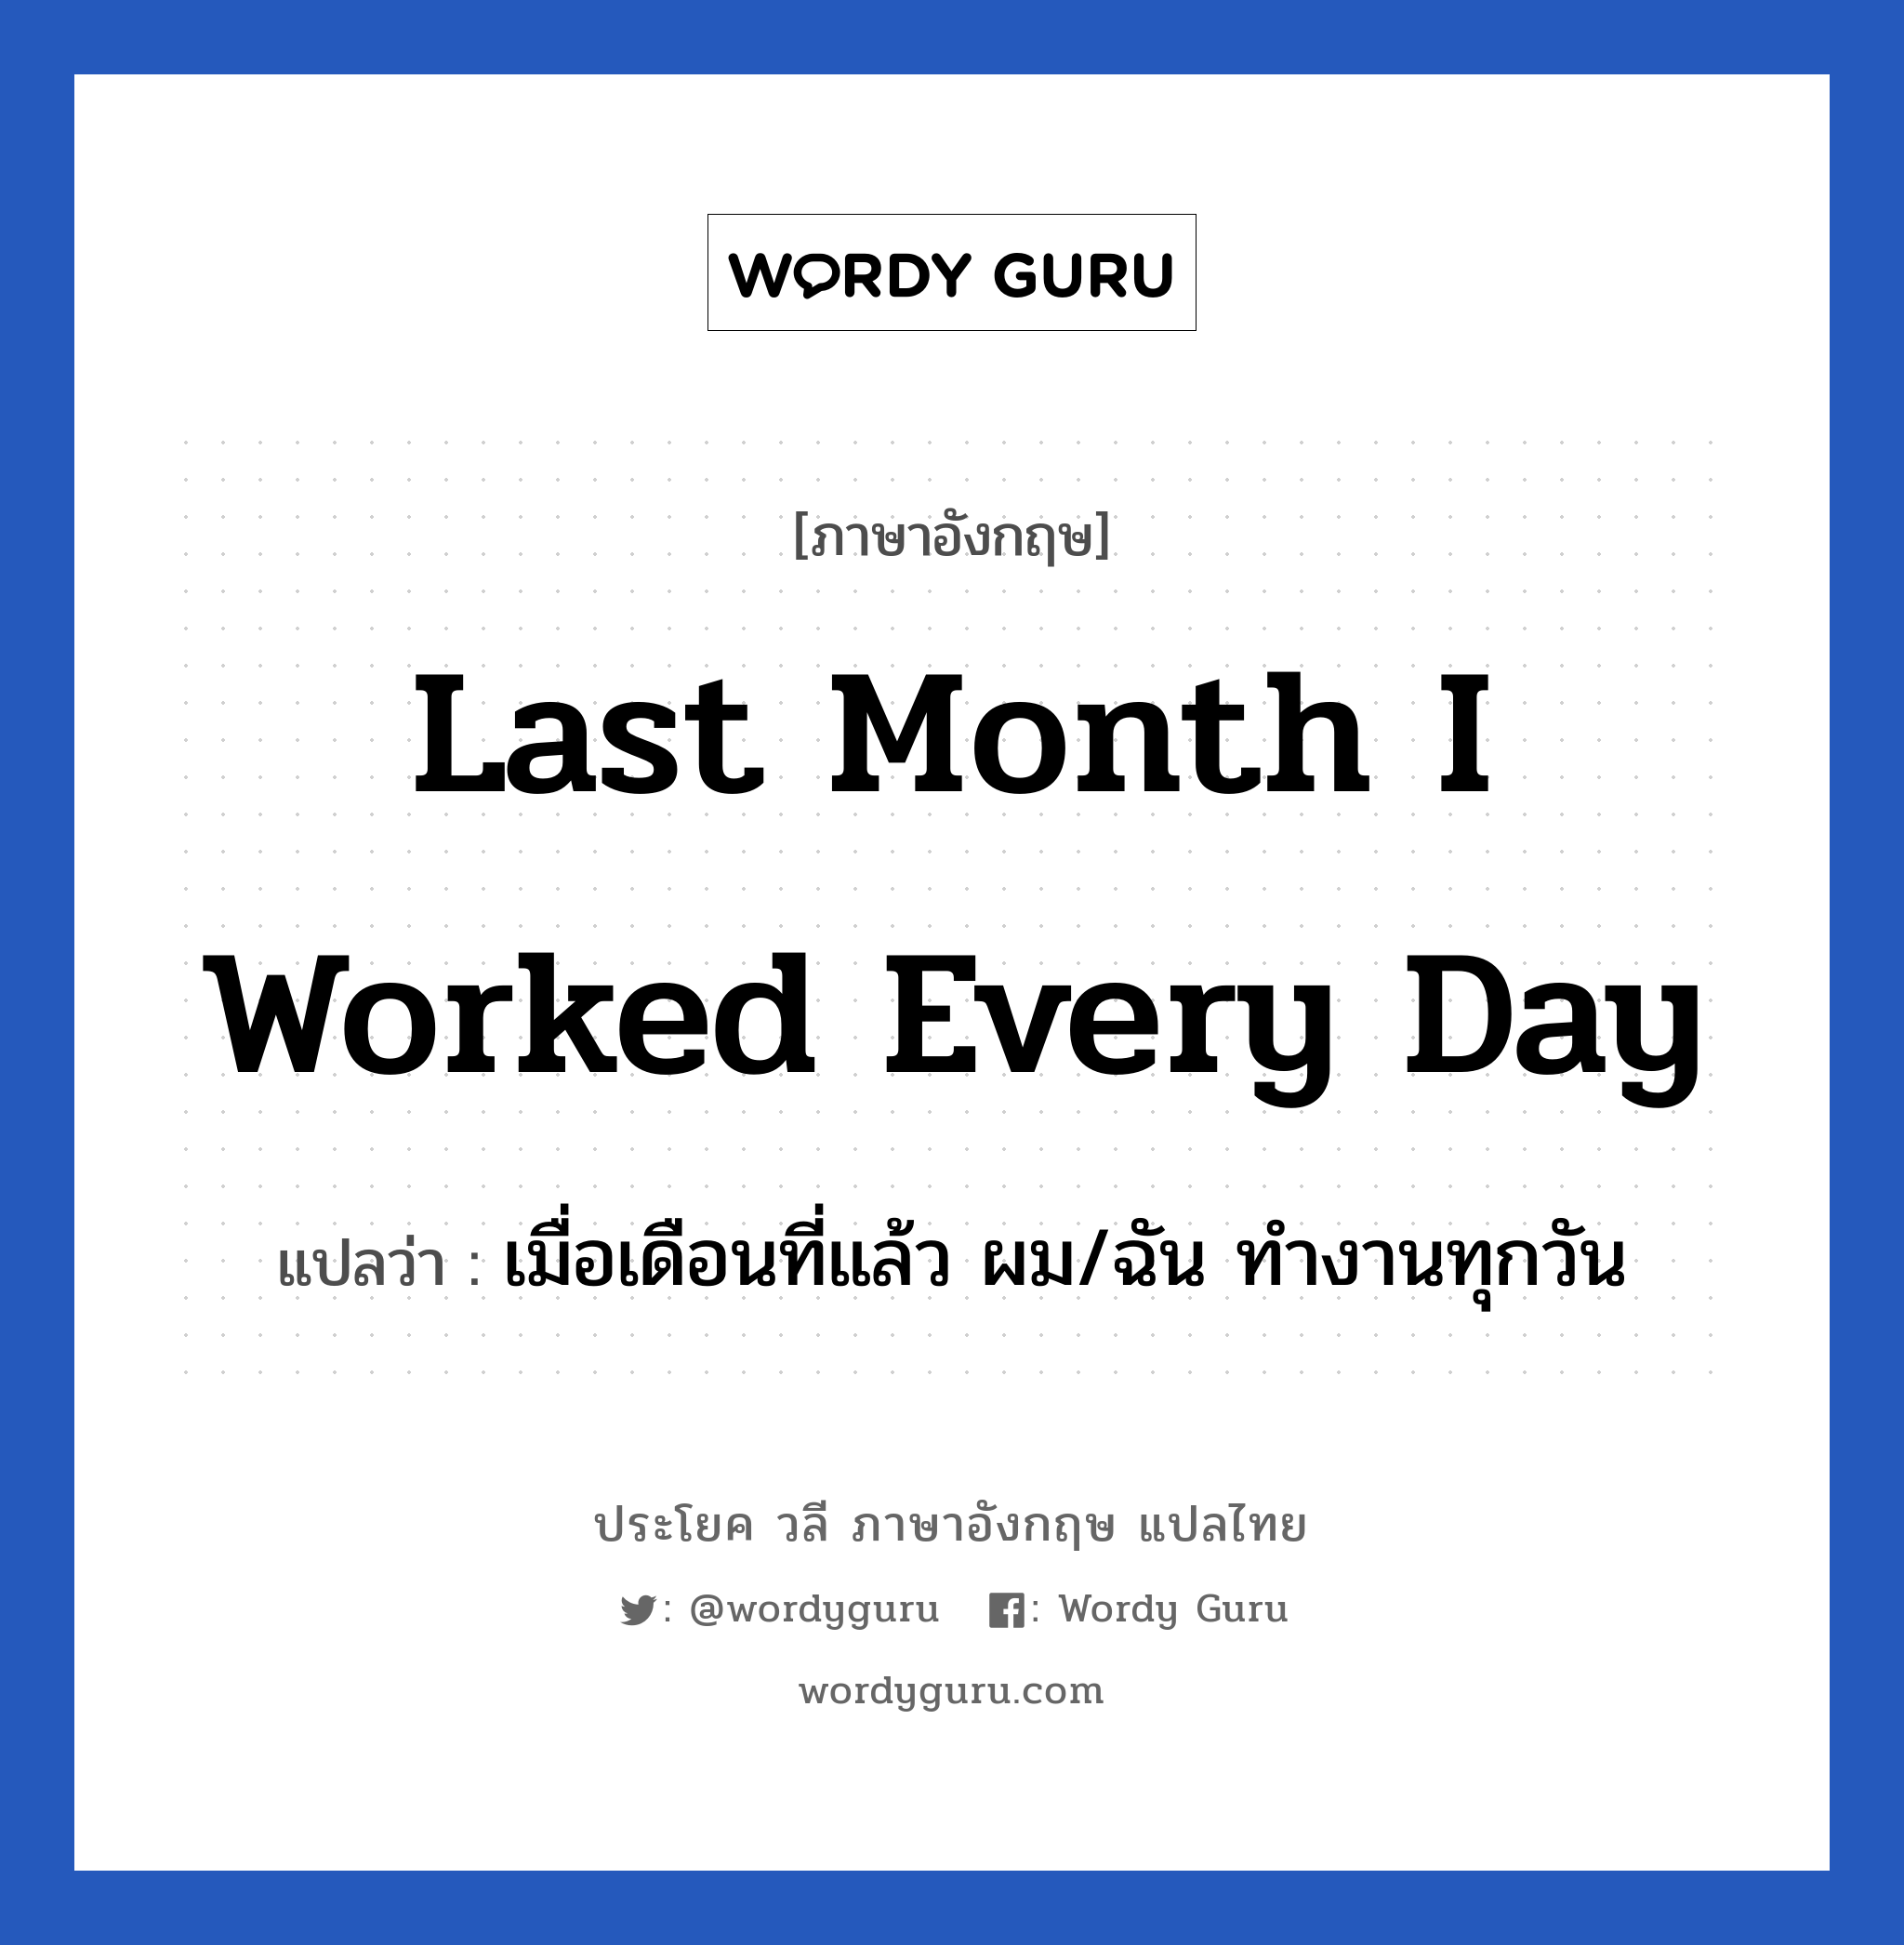 เมื่อเดือนที่แล้ว ผม/ฉัน ทำงานทุกวัน ภาษาอังกฤษ?, วลีภาษาอังกฤษ เมื่อเดือนที่แล้ว ผม/ฉัน ทำงานทุกวัน แปลว่า Last month I worked every day